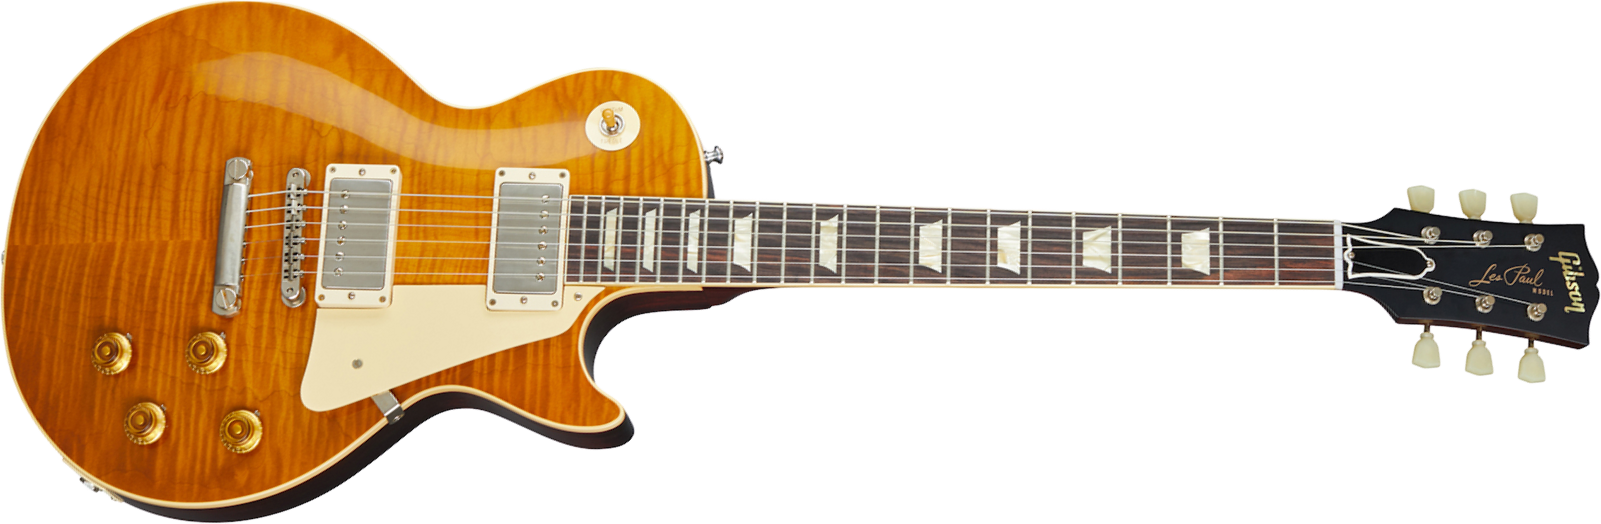 Gibson Custom Shop Les Paul Standard 1959 Reissue 2020 2h Ht Rw - Vos Dirty Lemon - Guitarra eléctrica de corte único. - Main picture